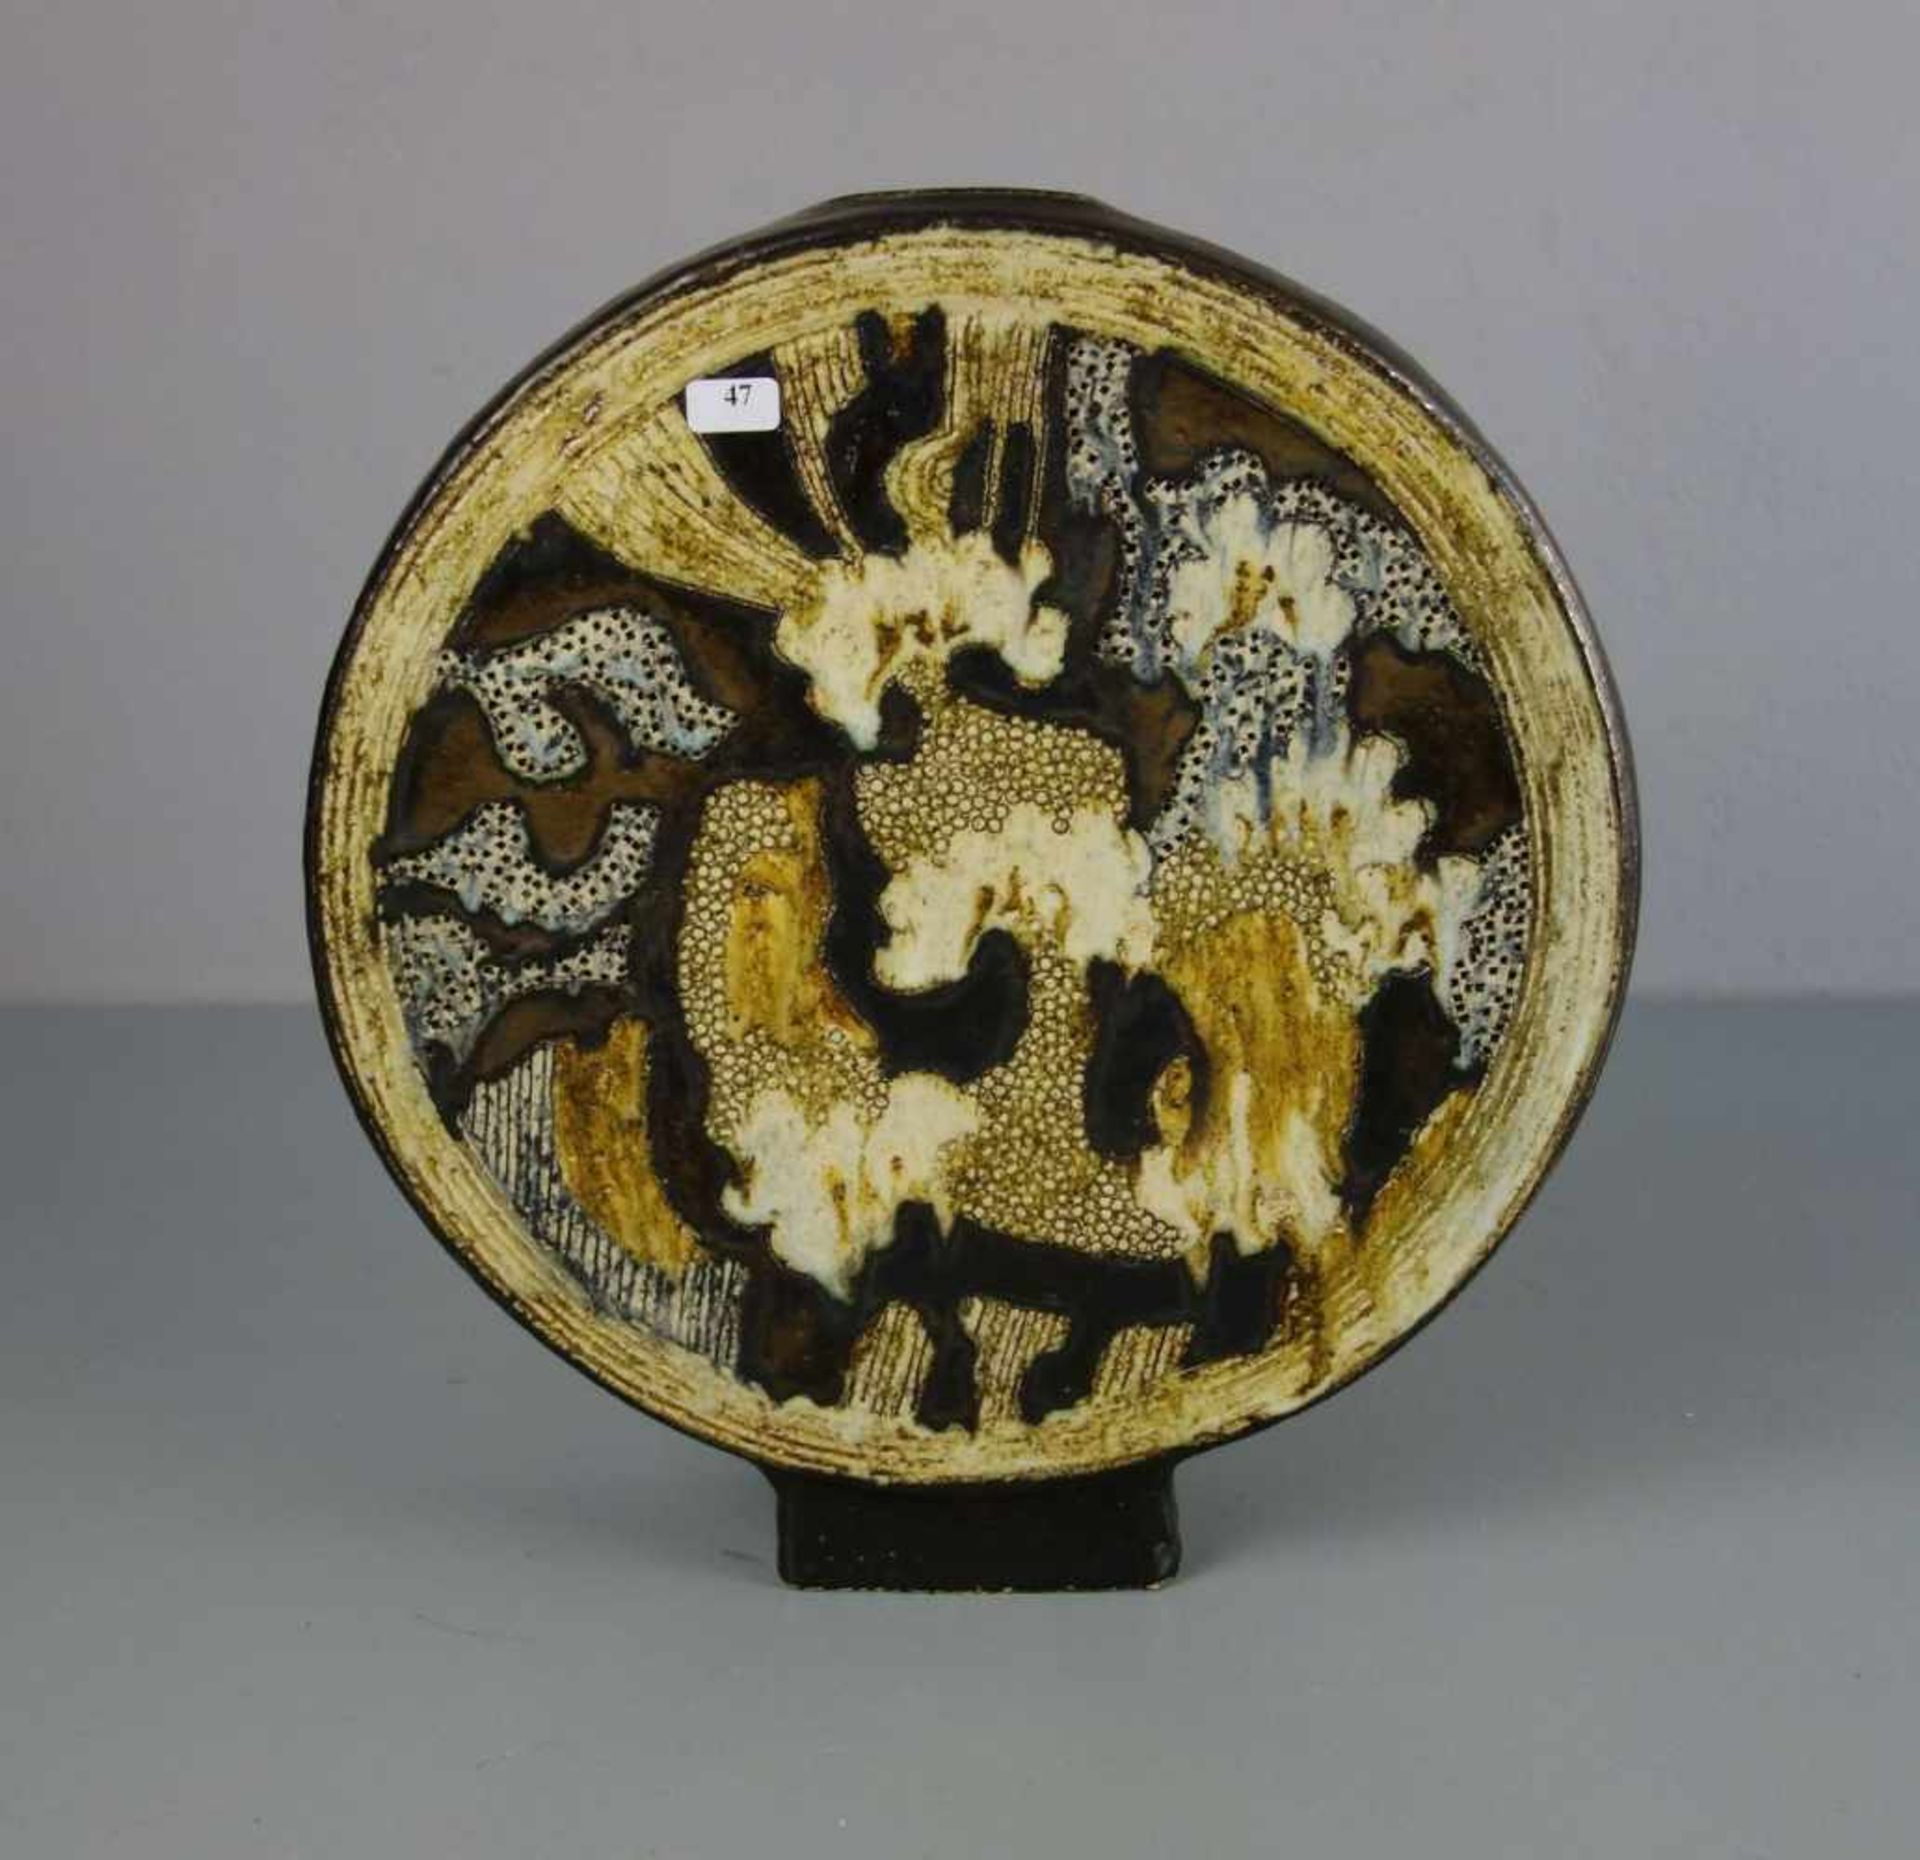 VASE, Keramik, heller Scherben, unter dem Stand monogrammiert "Jo. H.", um 1970. Scheibenförmiger - Bild 3 aus 4